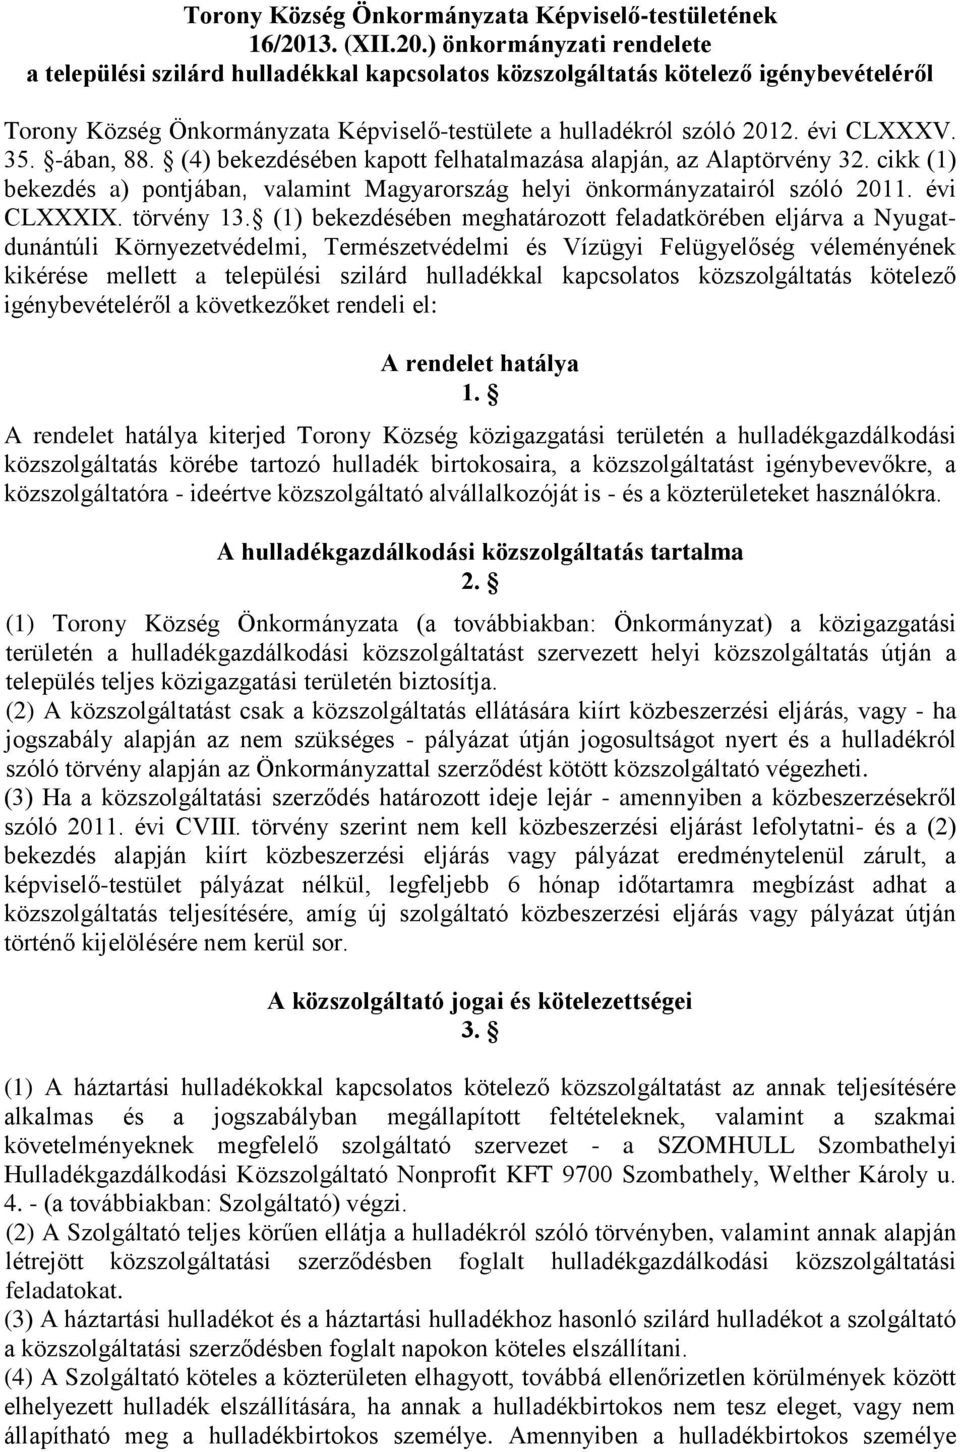 évi CLXXXV. 35. -ában, 88. (4) bekezdésében kapott felhatalmazása alapján, az Alaptörvény 32. cikk (1) bekezdés a) pontjában, valamint Magyarország helyi önkormányzatairól szóló 2011. évi CLXXXIX.